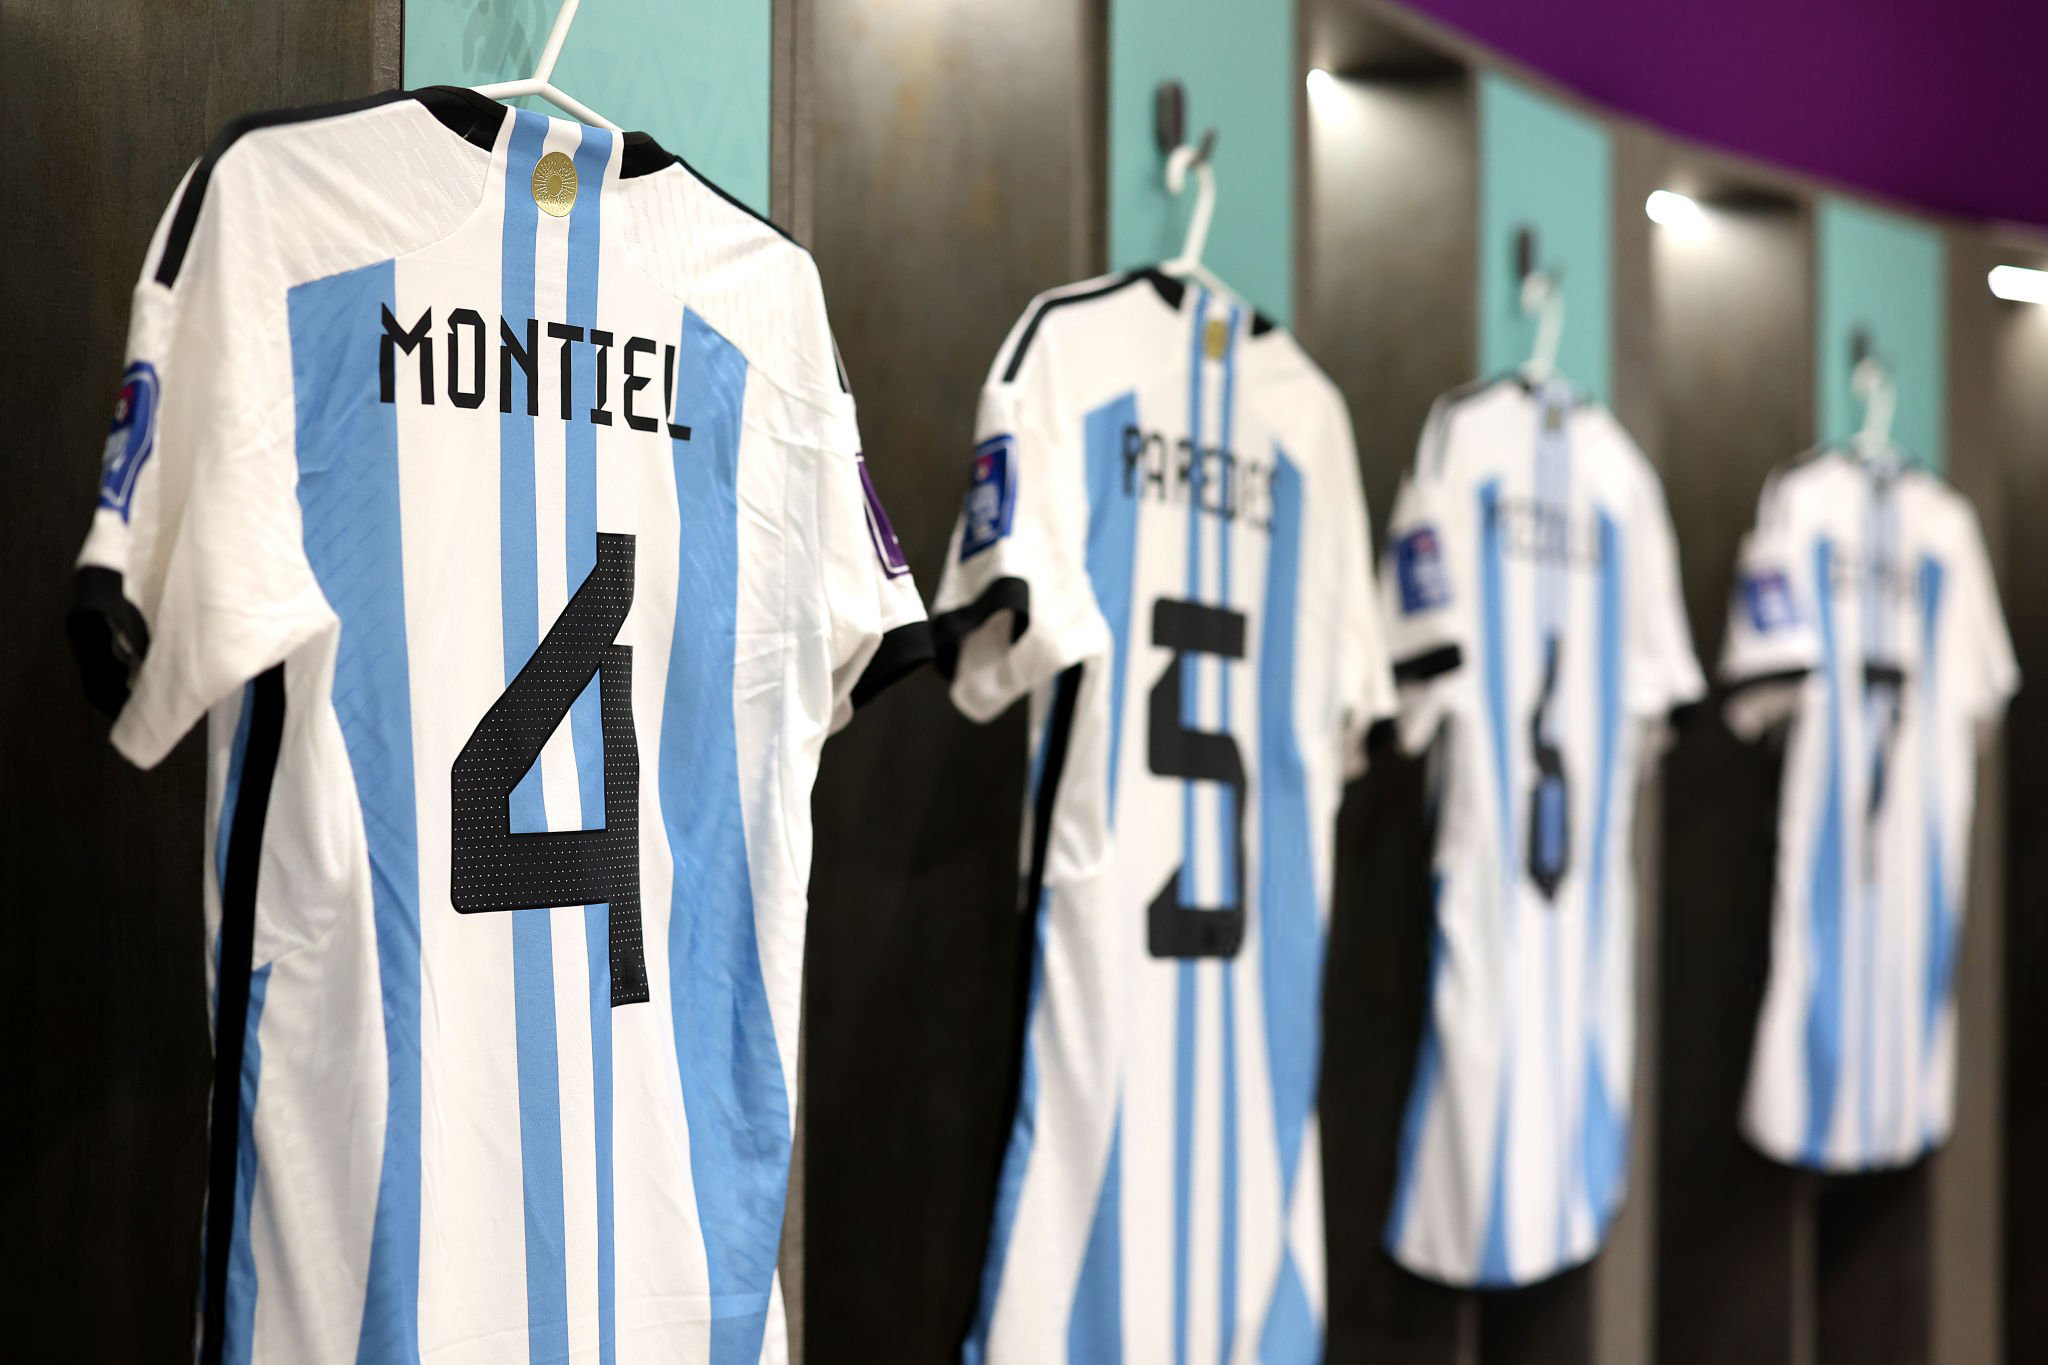 Camiseta de Gonzalo Montiel en el vestuario de Argentina